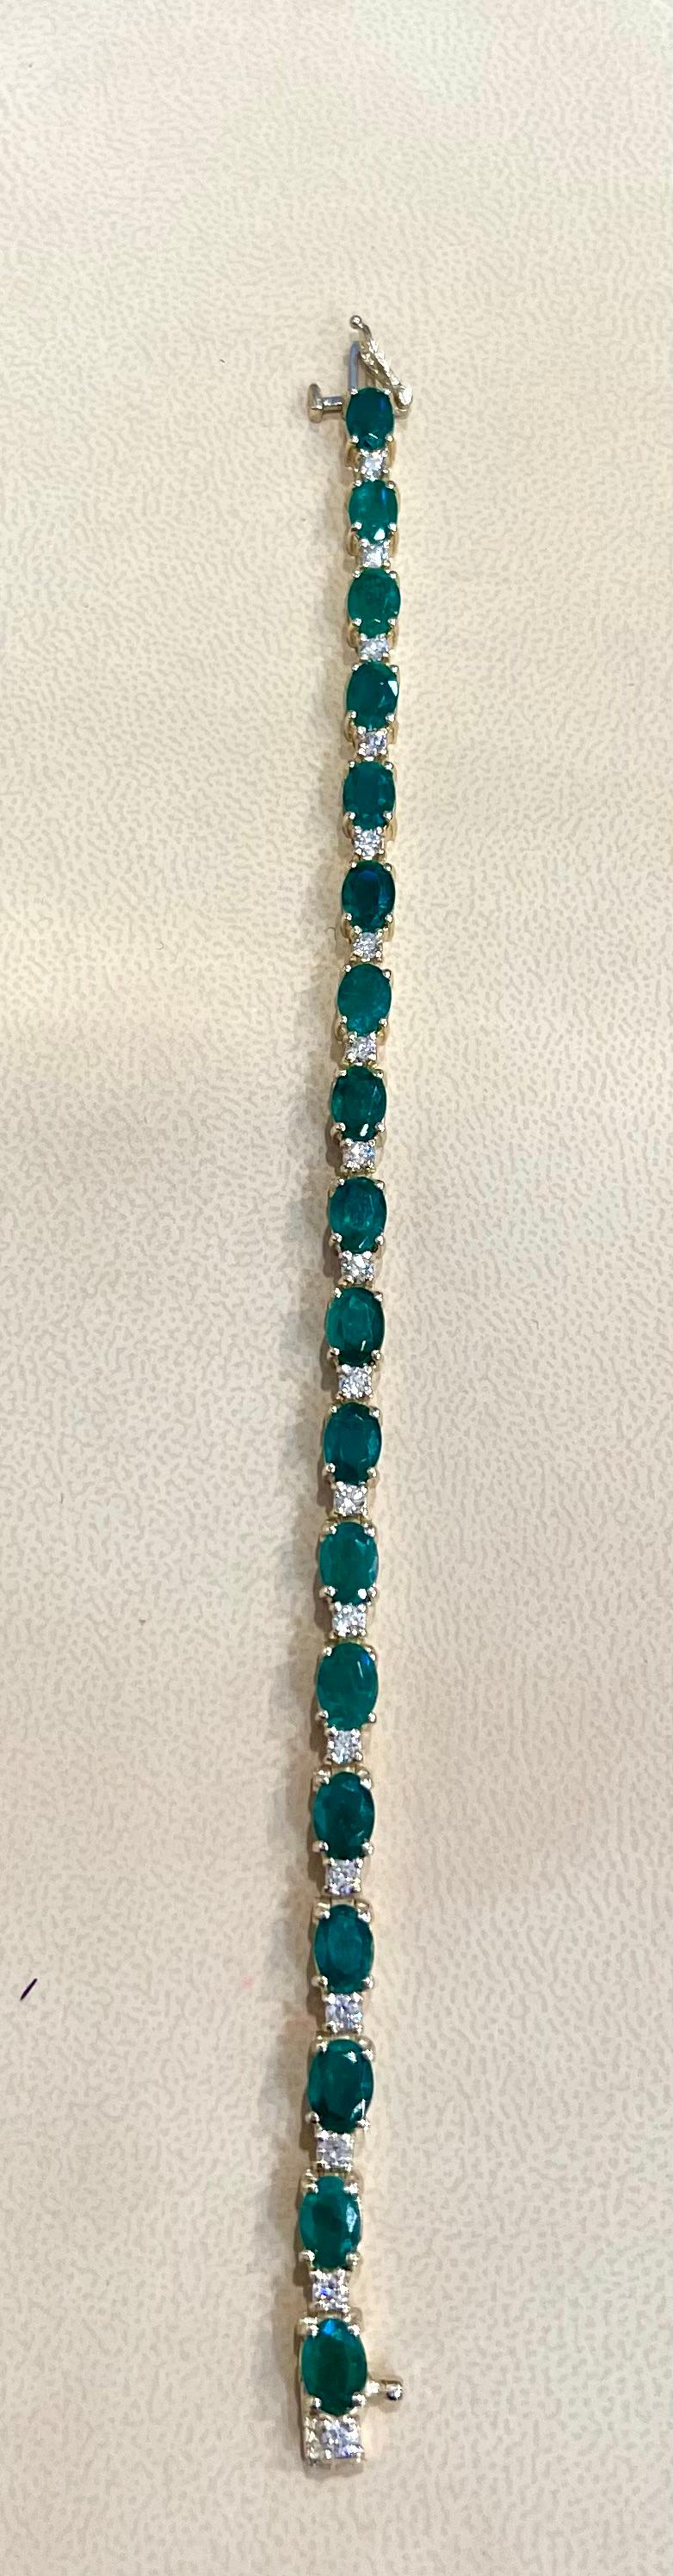 16 Carat Natural Emerald & Diamond Cocktail Tennis Bracelet 14 Karat Yellow Gold 4